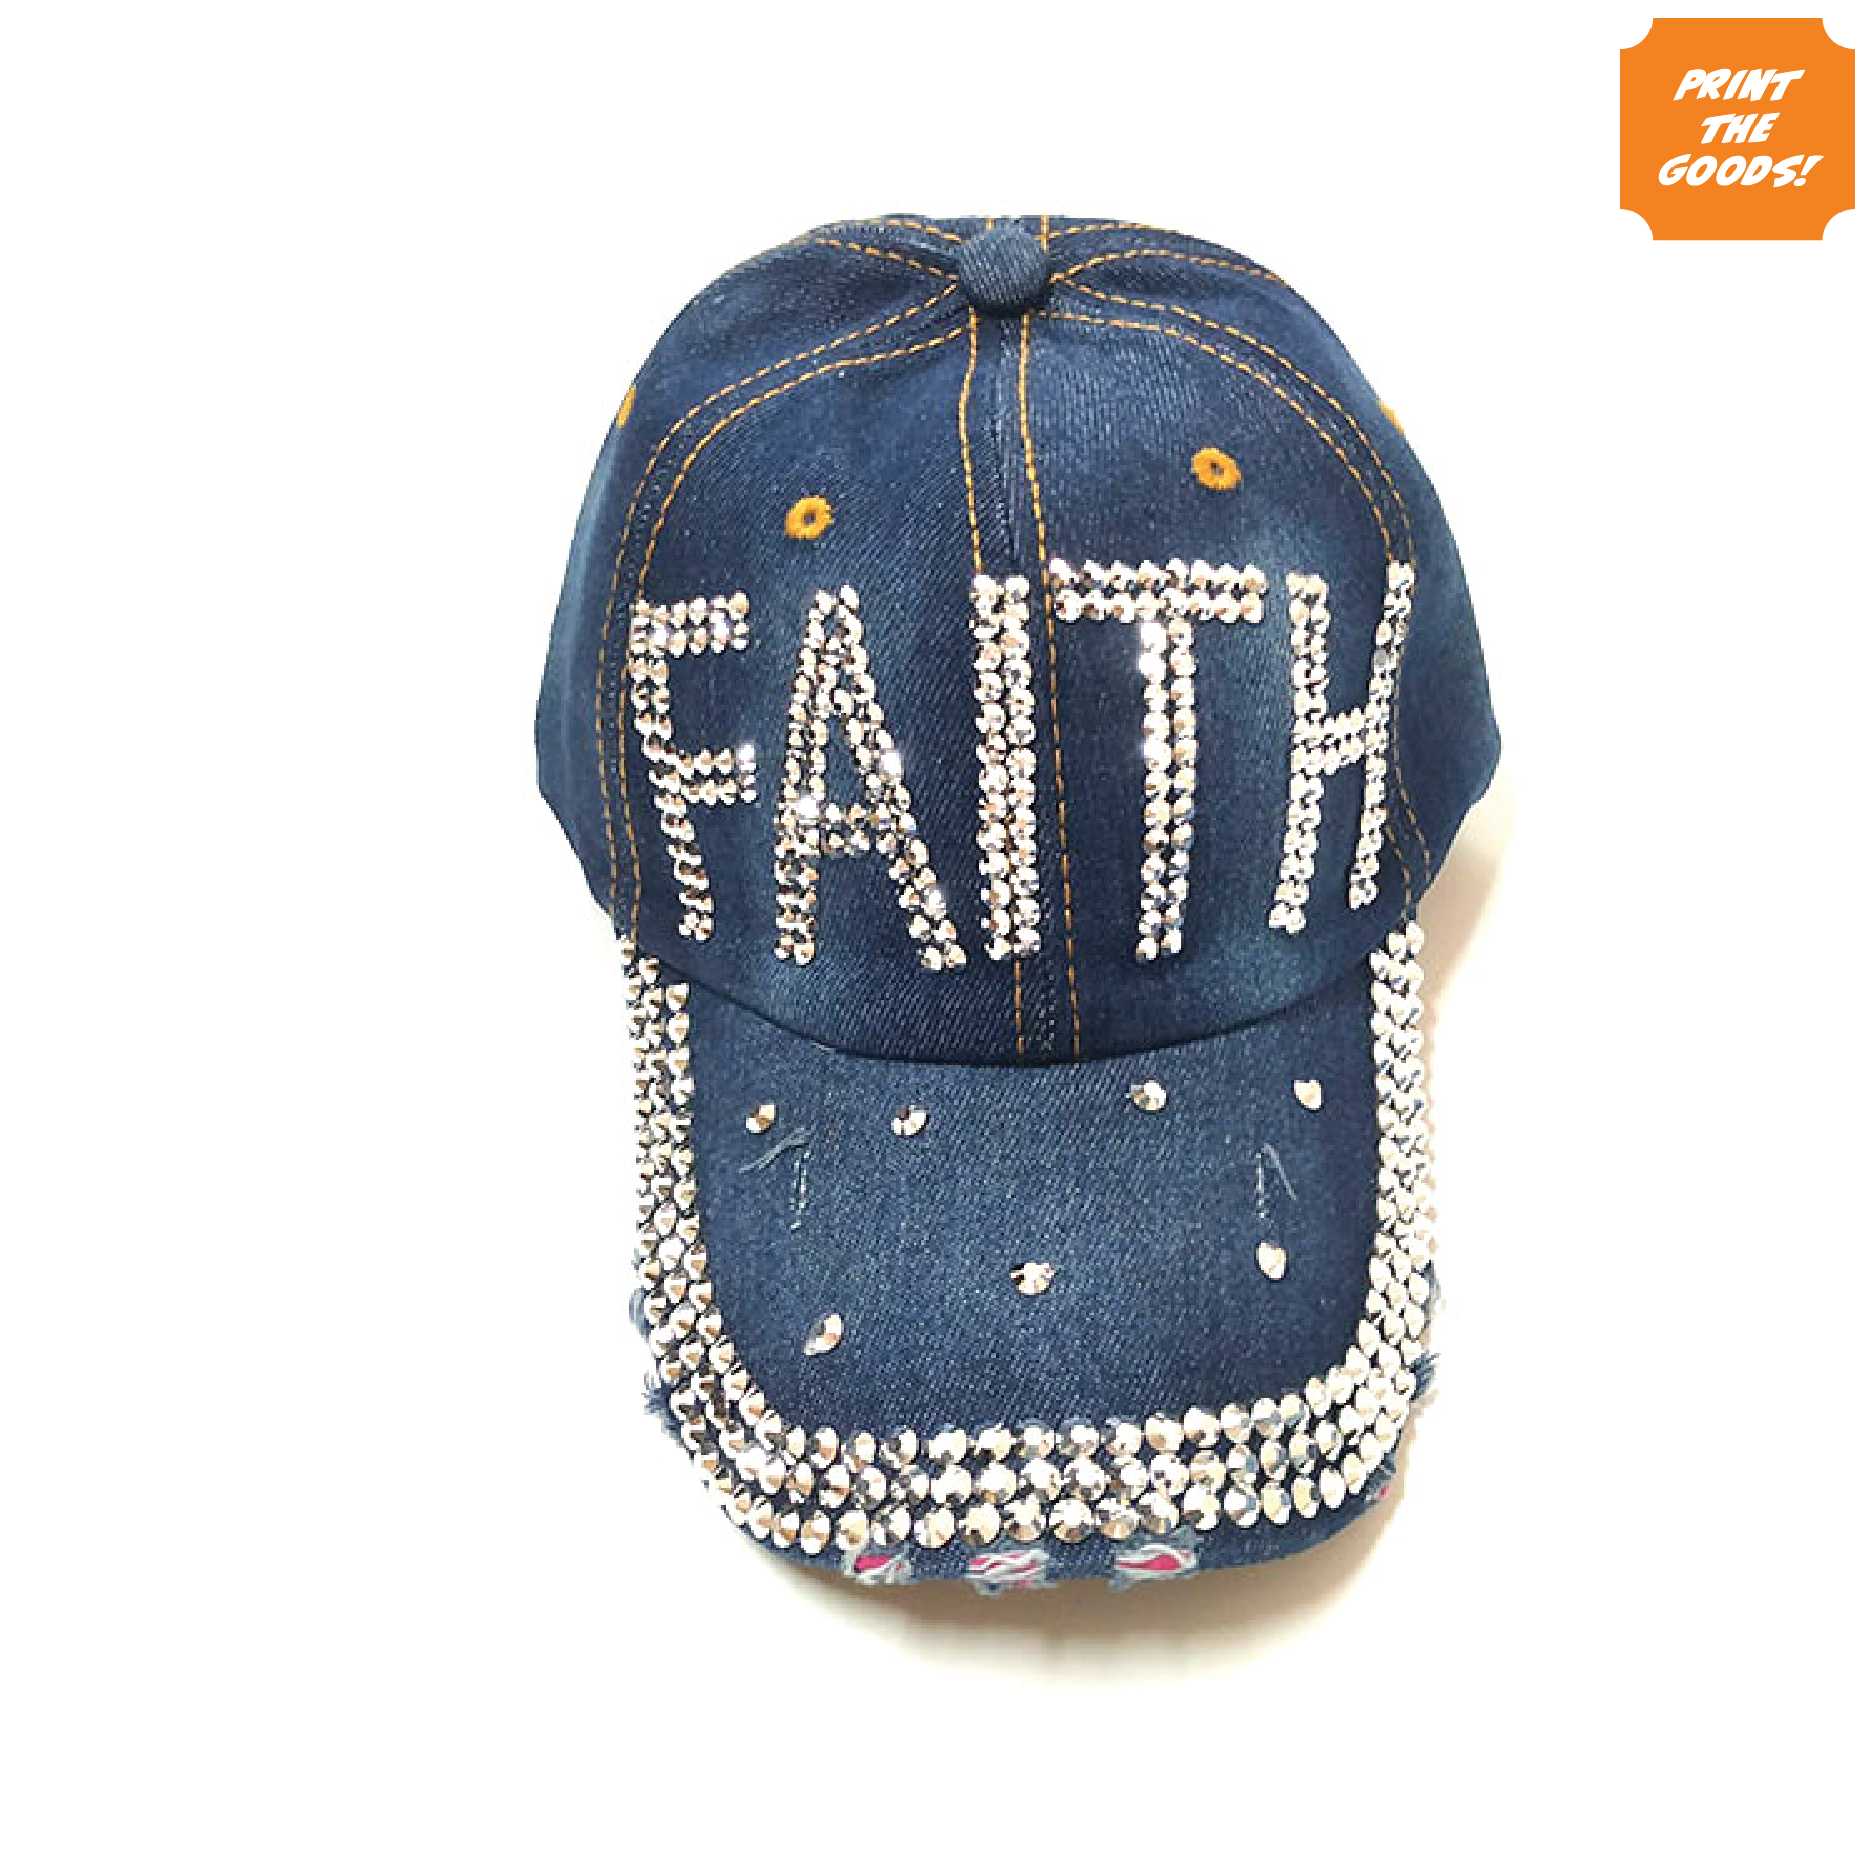 Diamante denim "Faith" hat